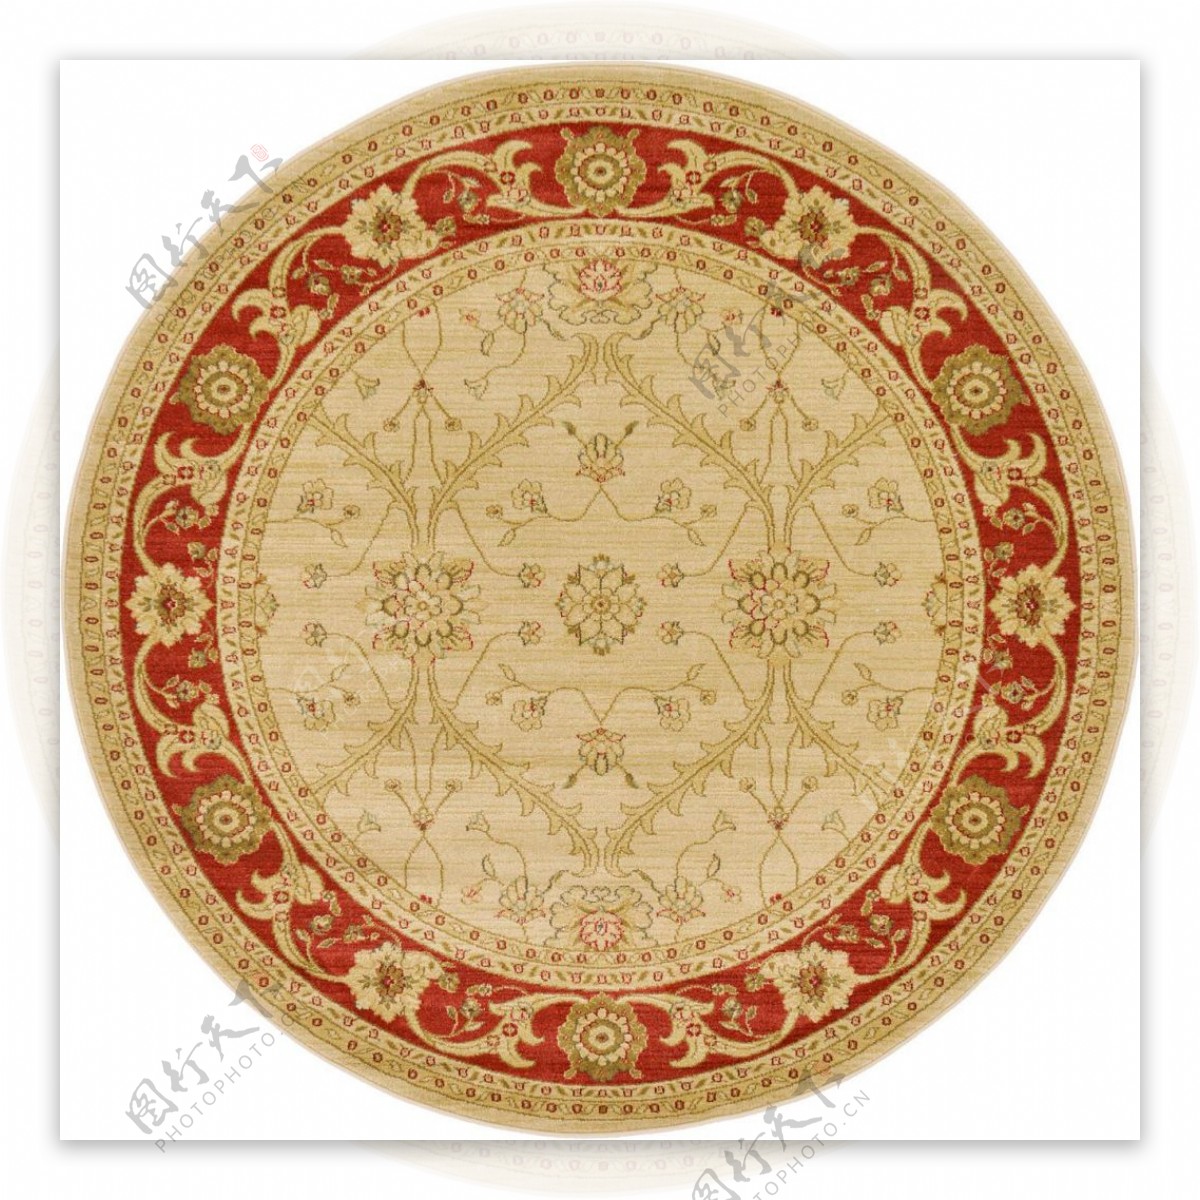 圆形花纹地毯纹理材质贴图素材